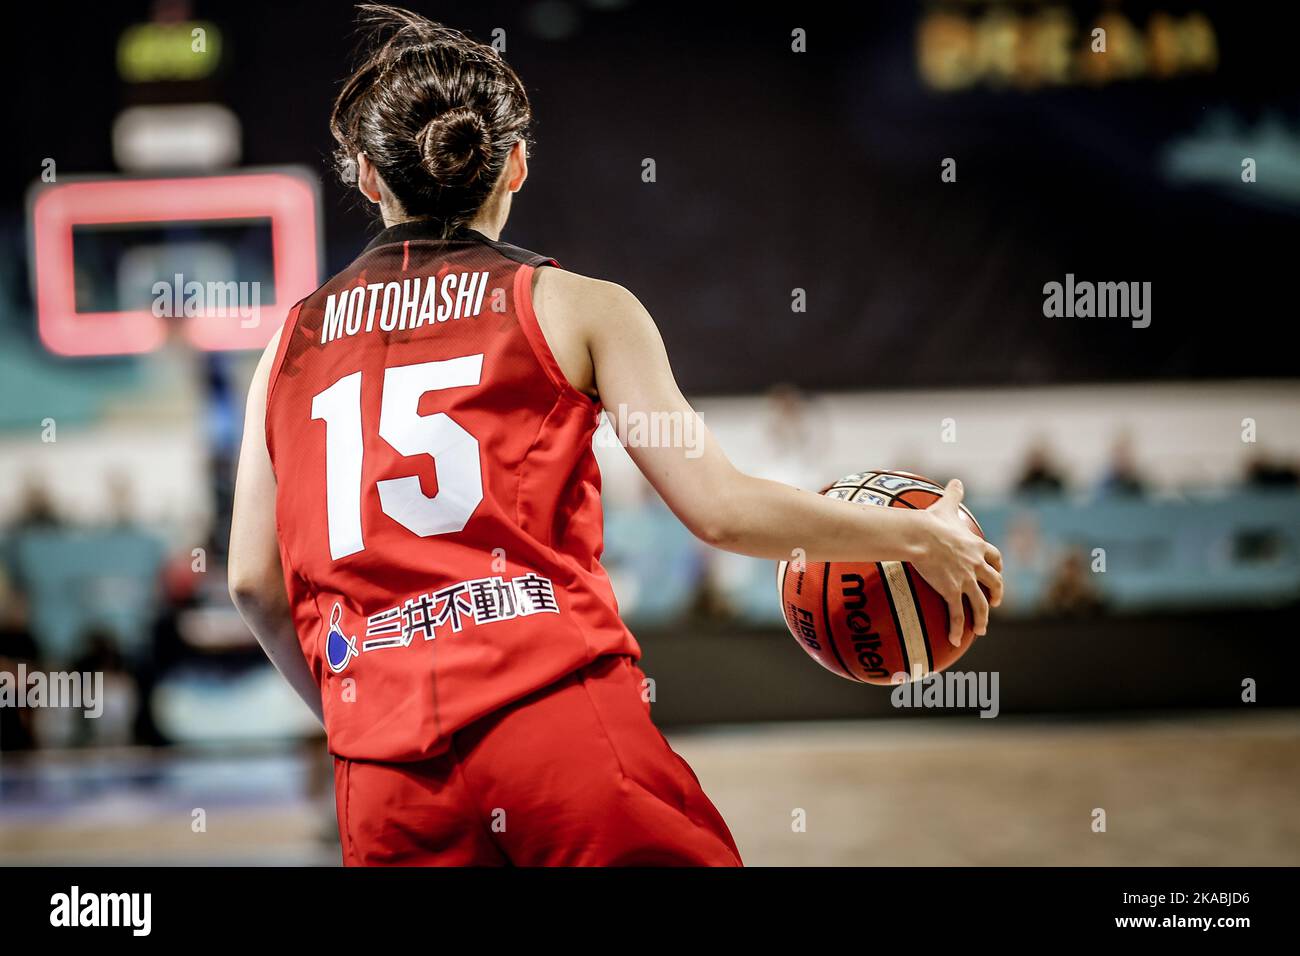 Espagne, Ténérife, 23 septembre 2018: Nako Motohashi, joueuse de basket-ball féminine, en action pendant la coupe du monde de basket-ball féminin de la FIBA Banque D'Images